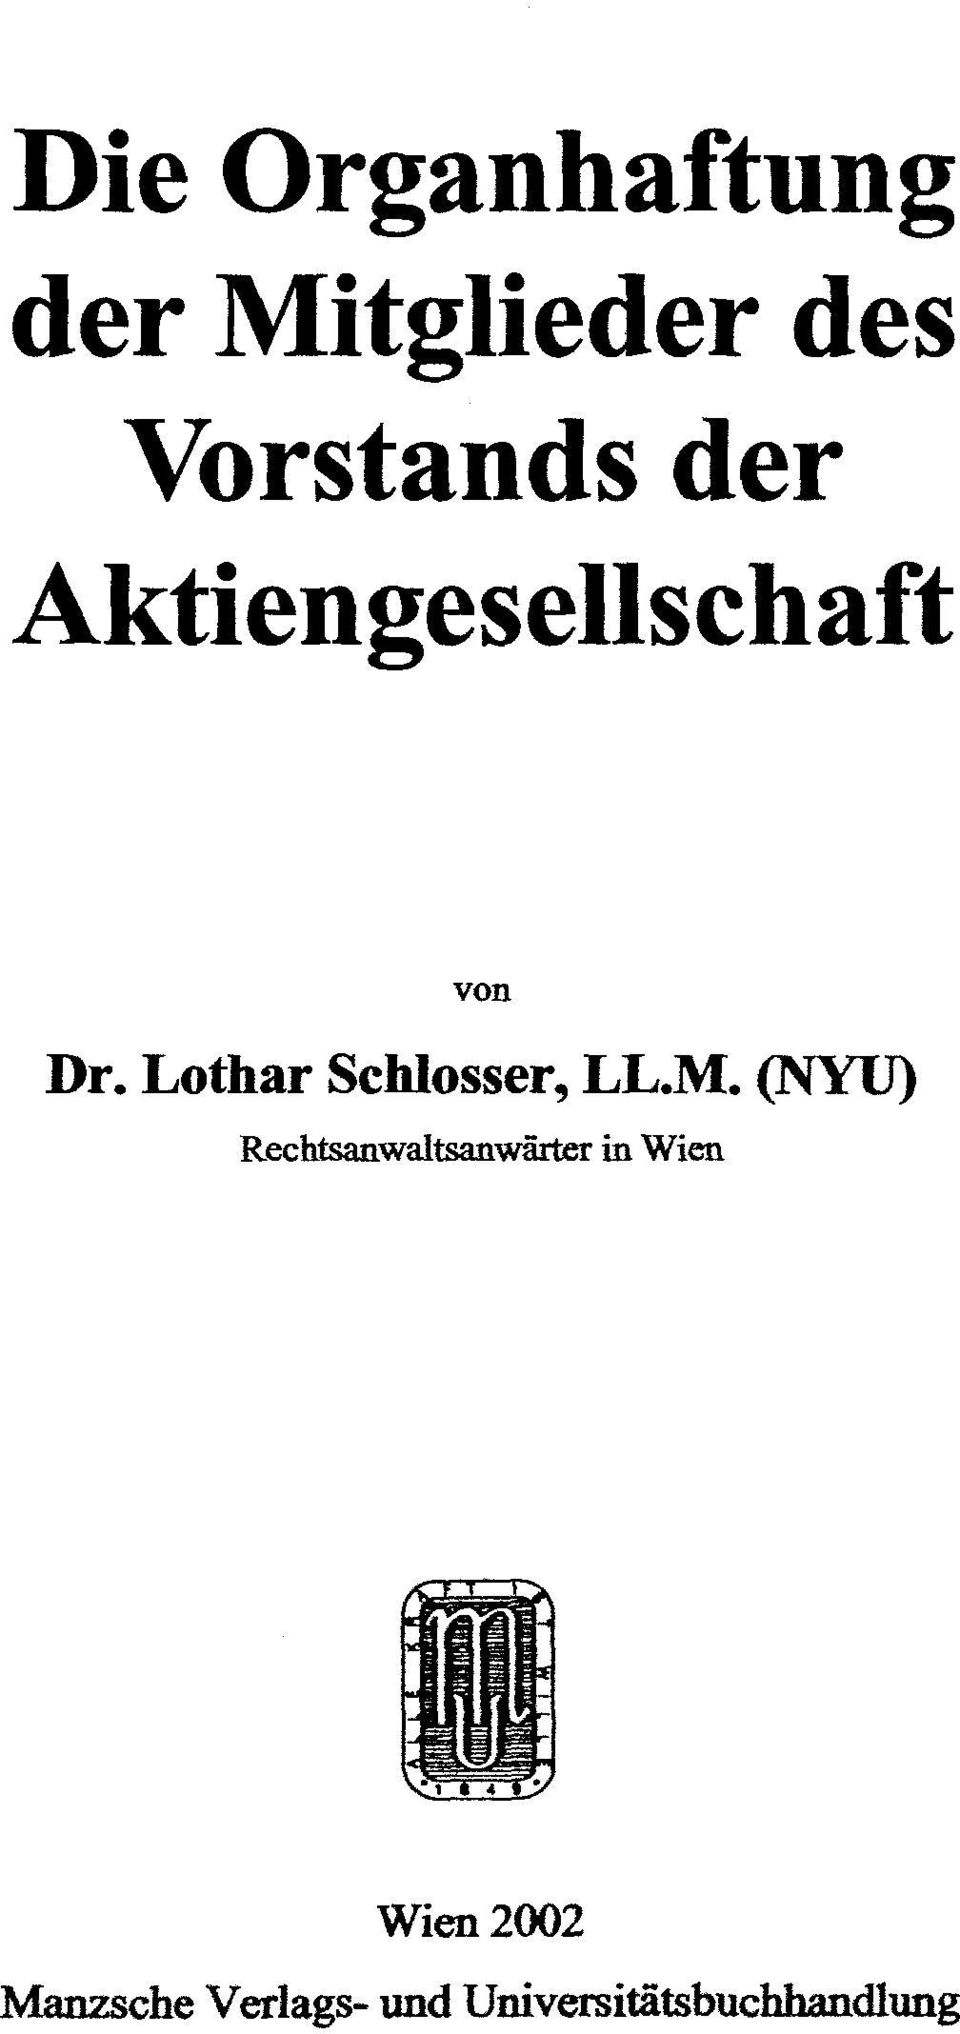 Lothar Schlosser, LL.M.